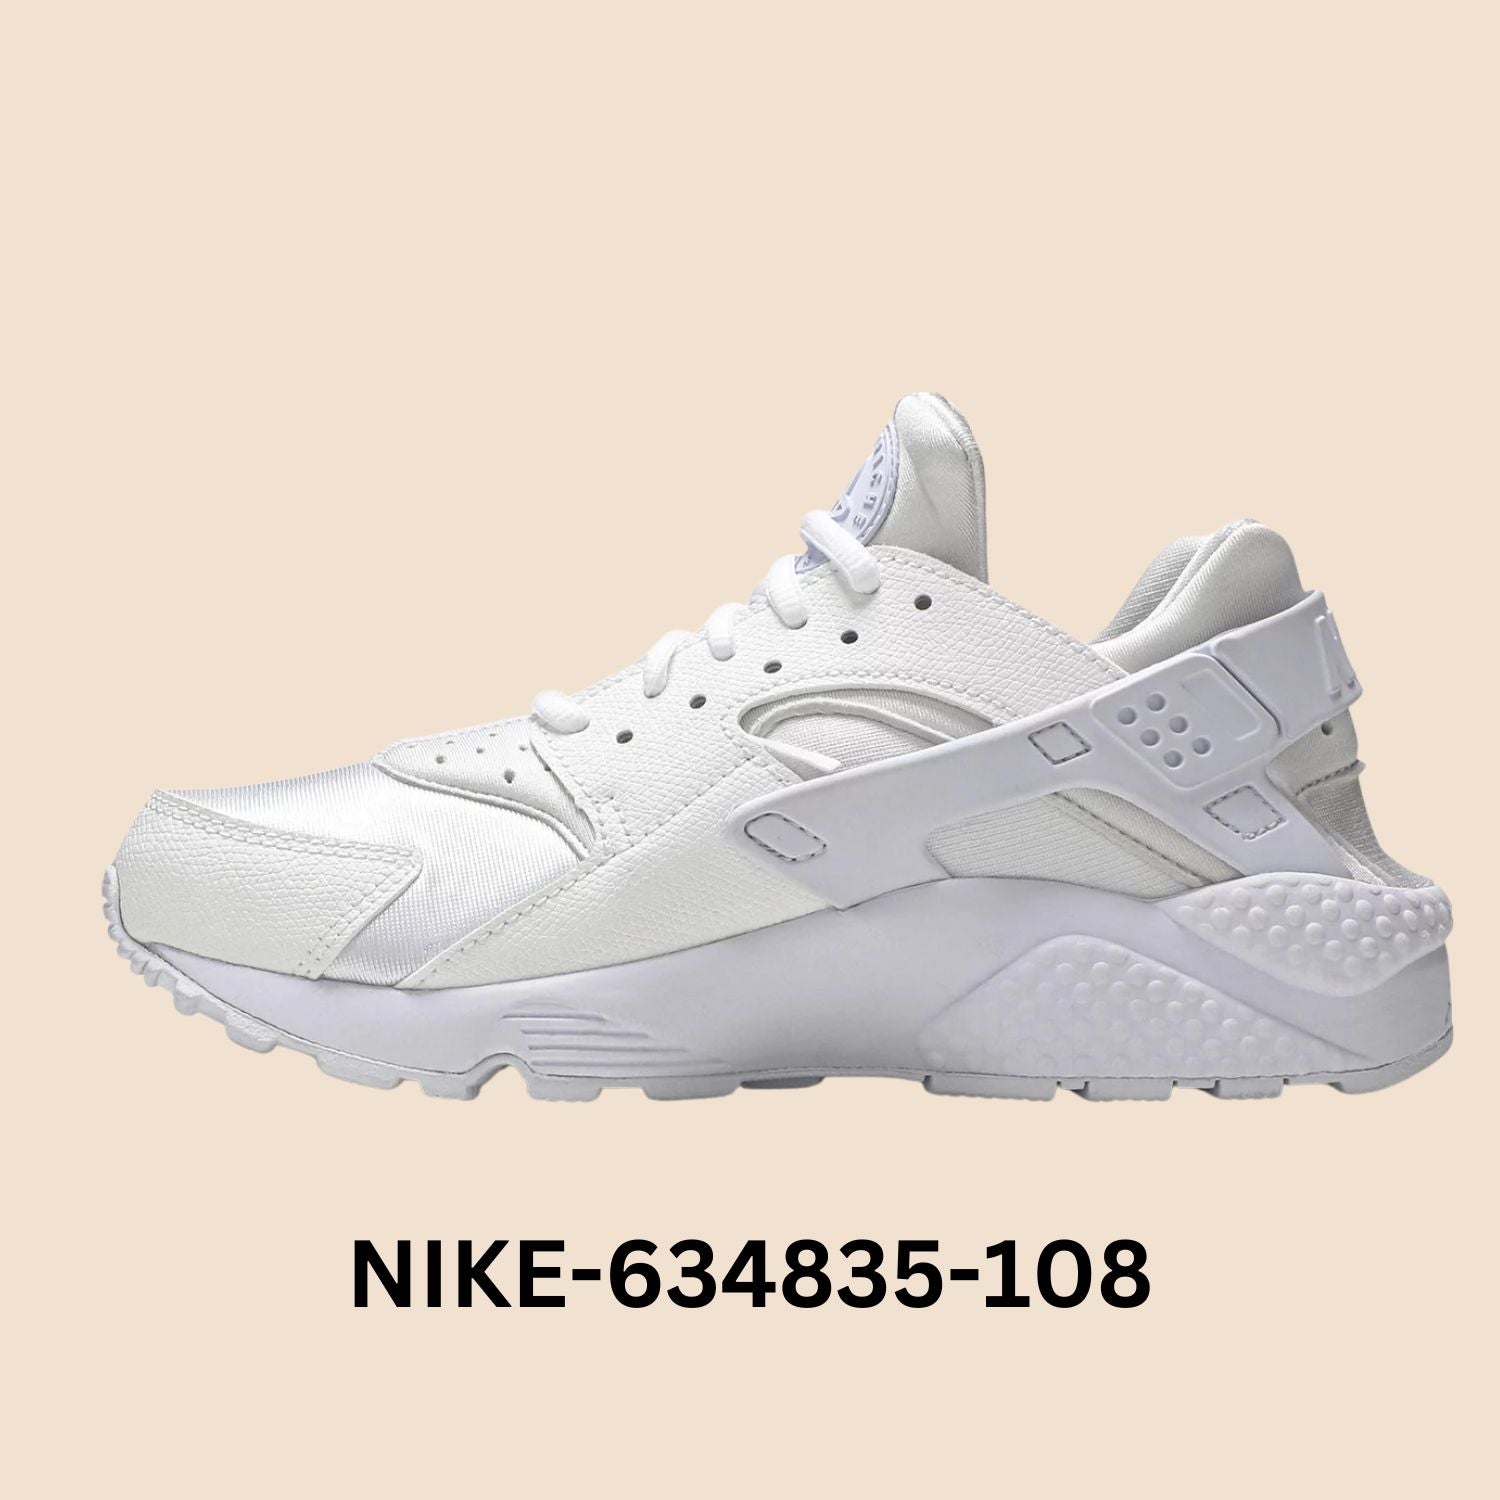 Nike Air Huarache Run "Triple White" Women's Style# 634835-108